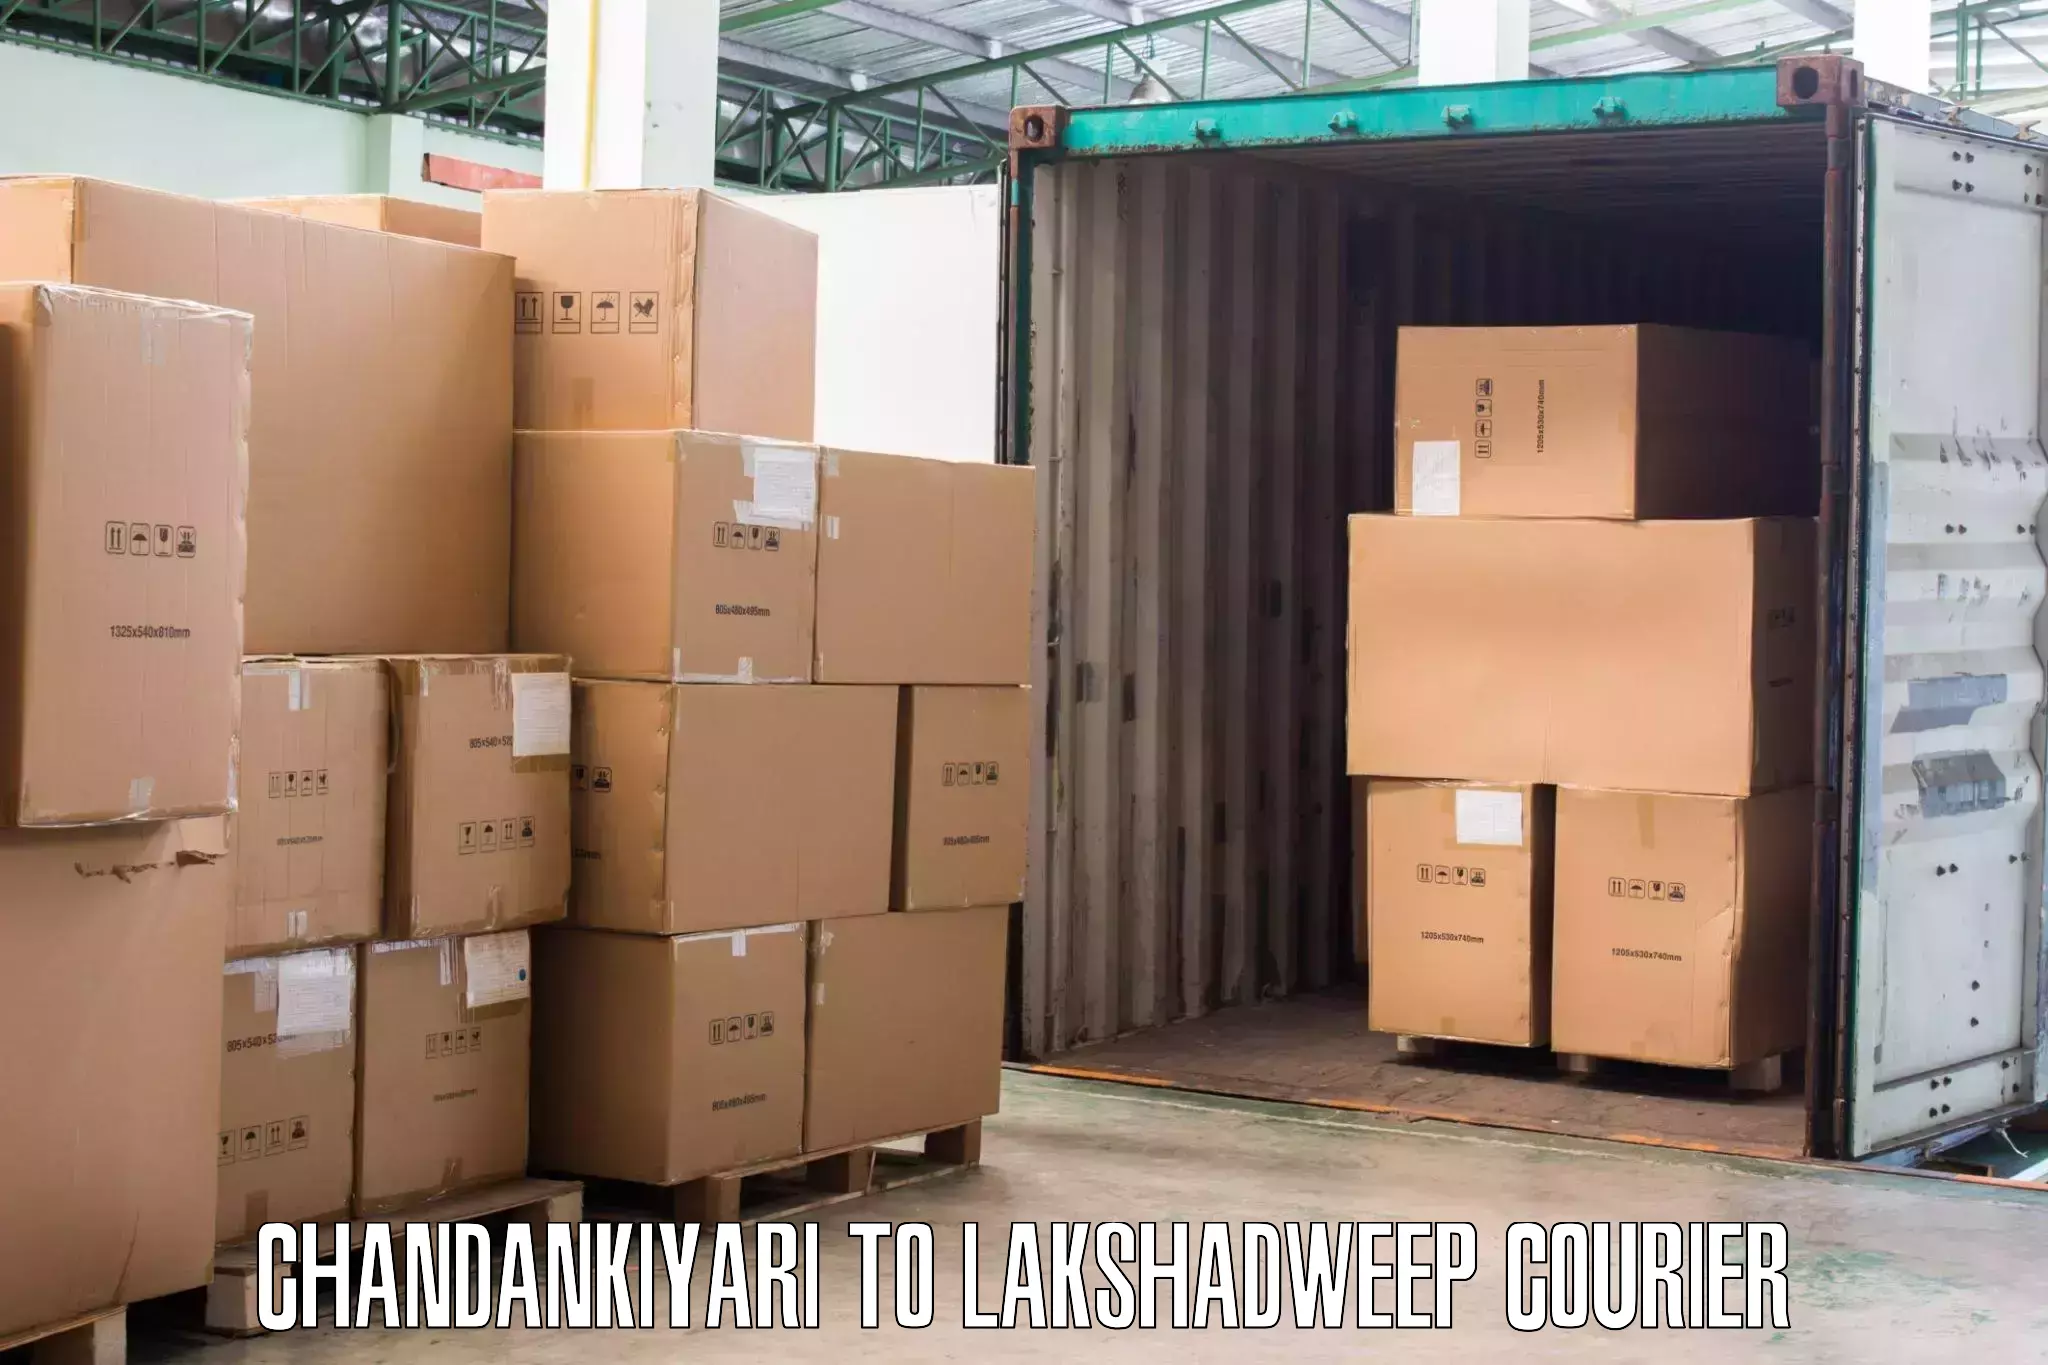 Trusted moving company Chandankiyari to Lakshadweep